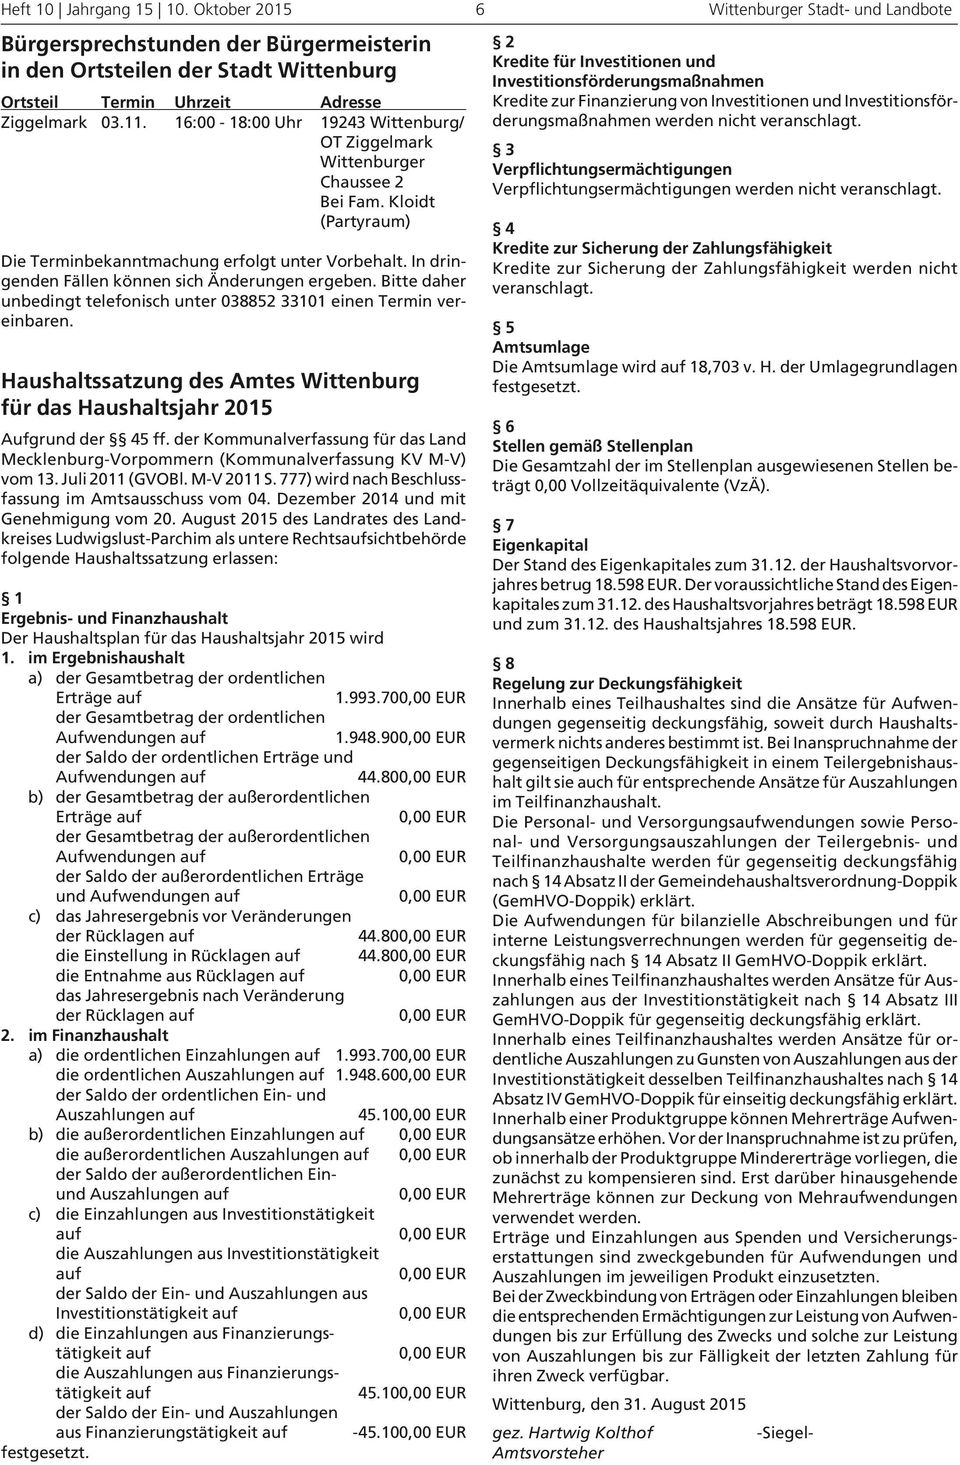 Aufgrund der 45 ff. der Kommunalverfassung für das Land Mecklenburg-Vorpommern (Kommunalverfassung KV M-V) vom 13. Juli 2011 (GVOBl. M-V 2011 S.